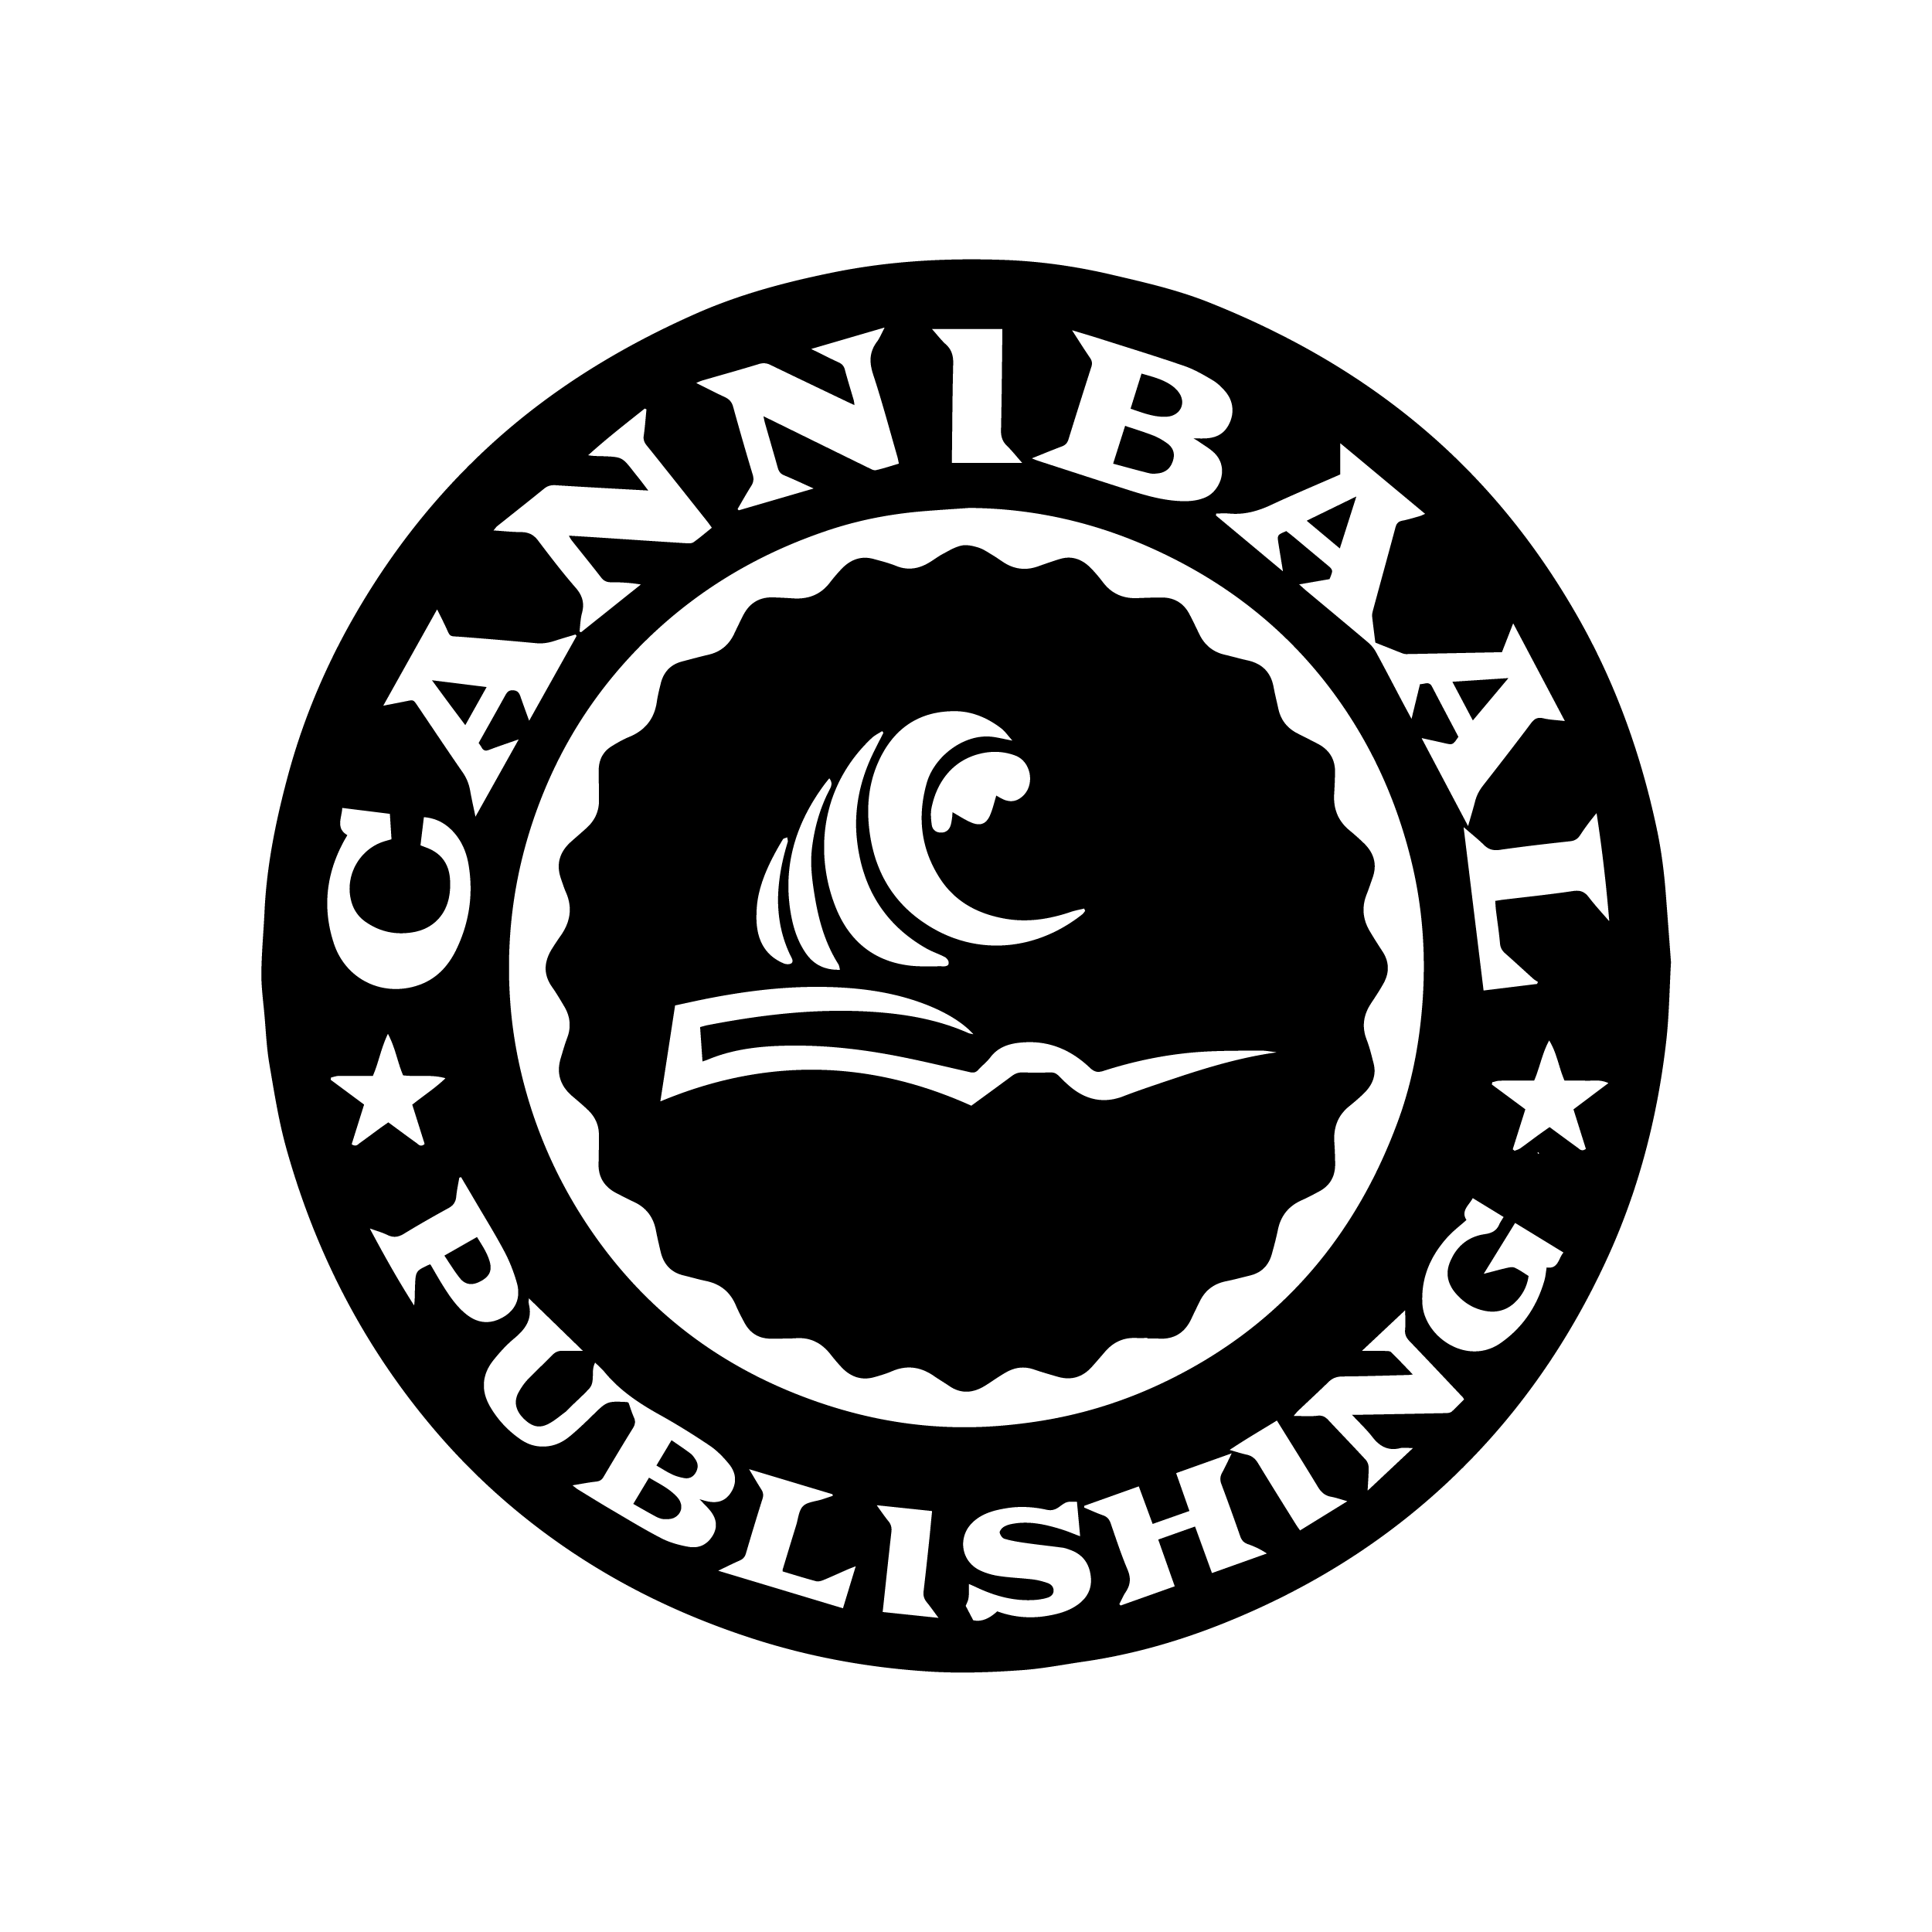 Cannibaal Publishing